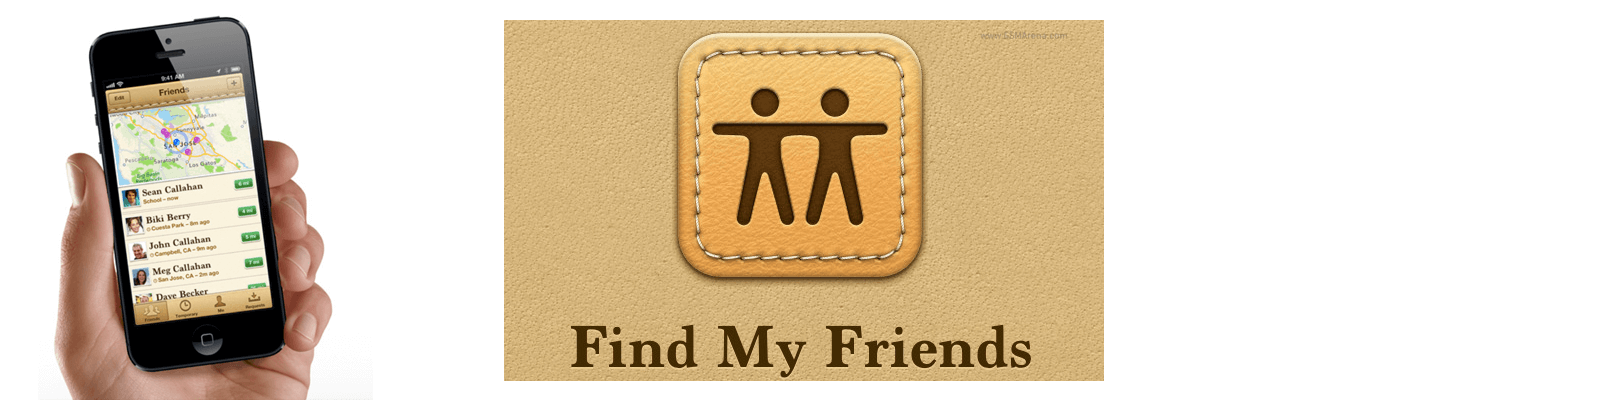 app like find my friends